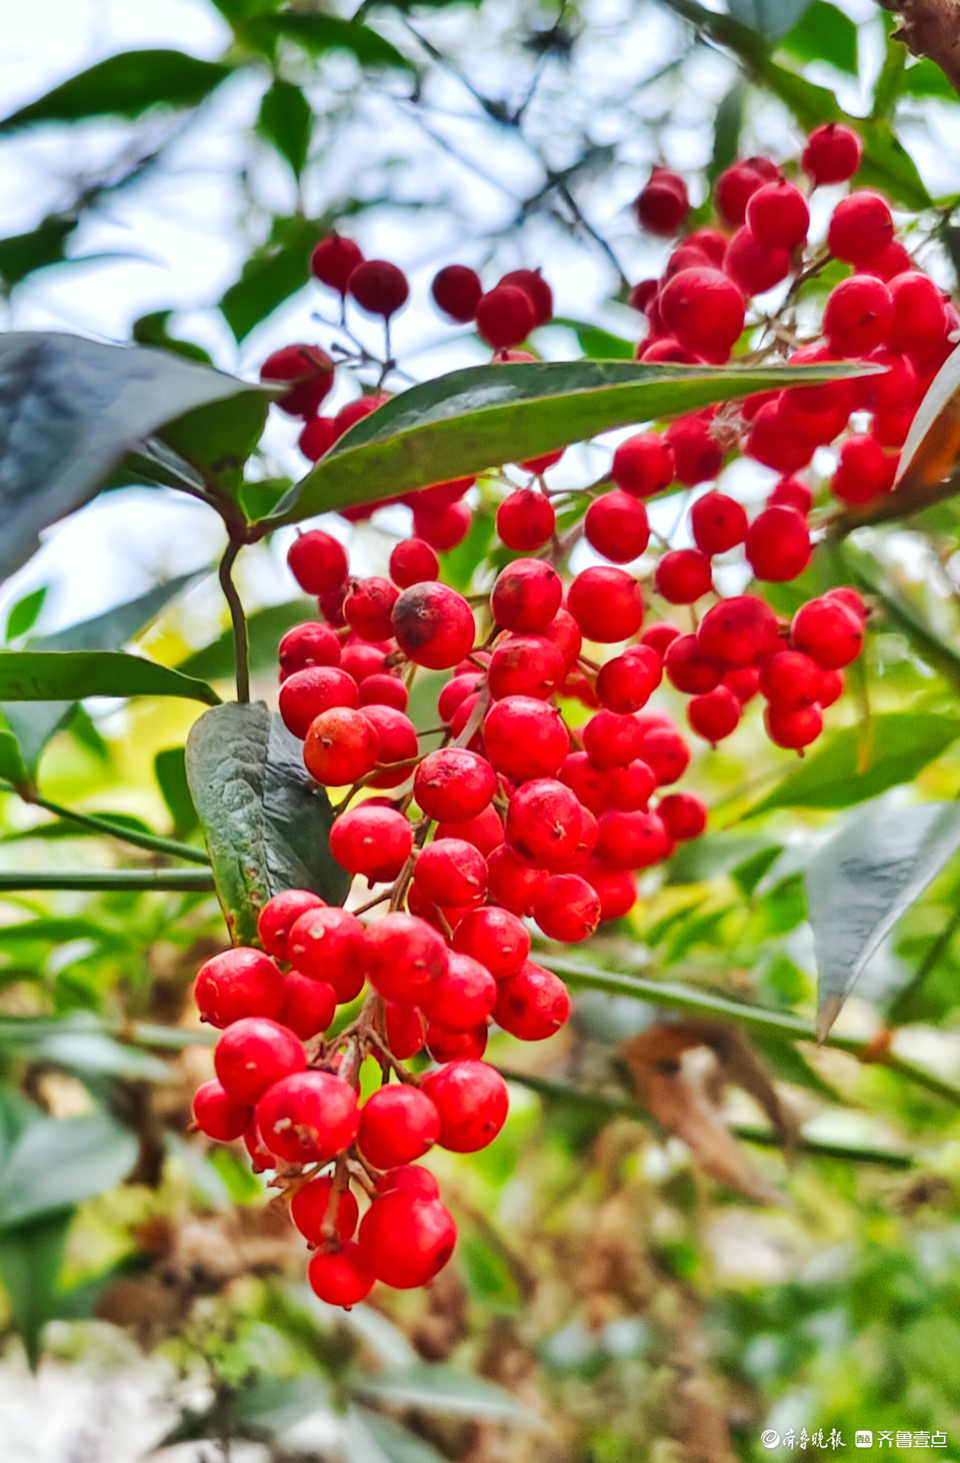 红红的果实满枝头,南天竹美丽动人